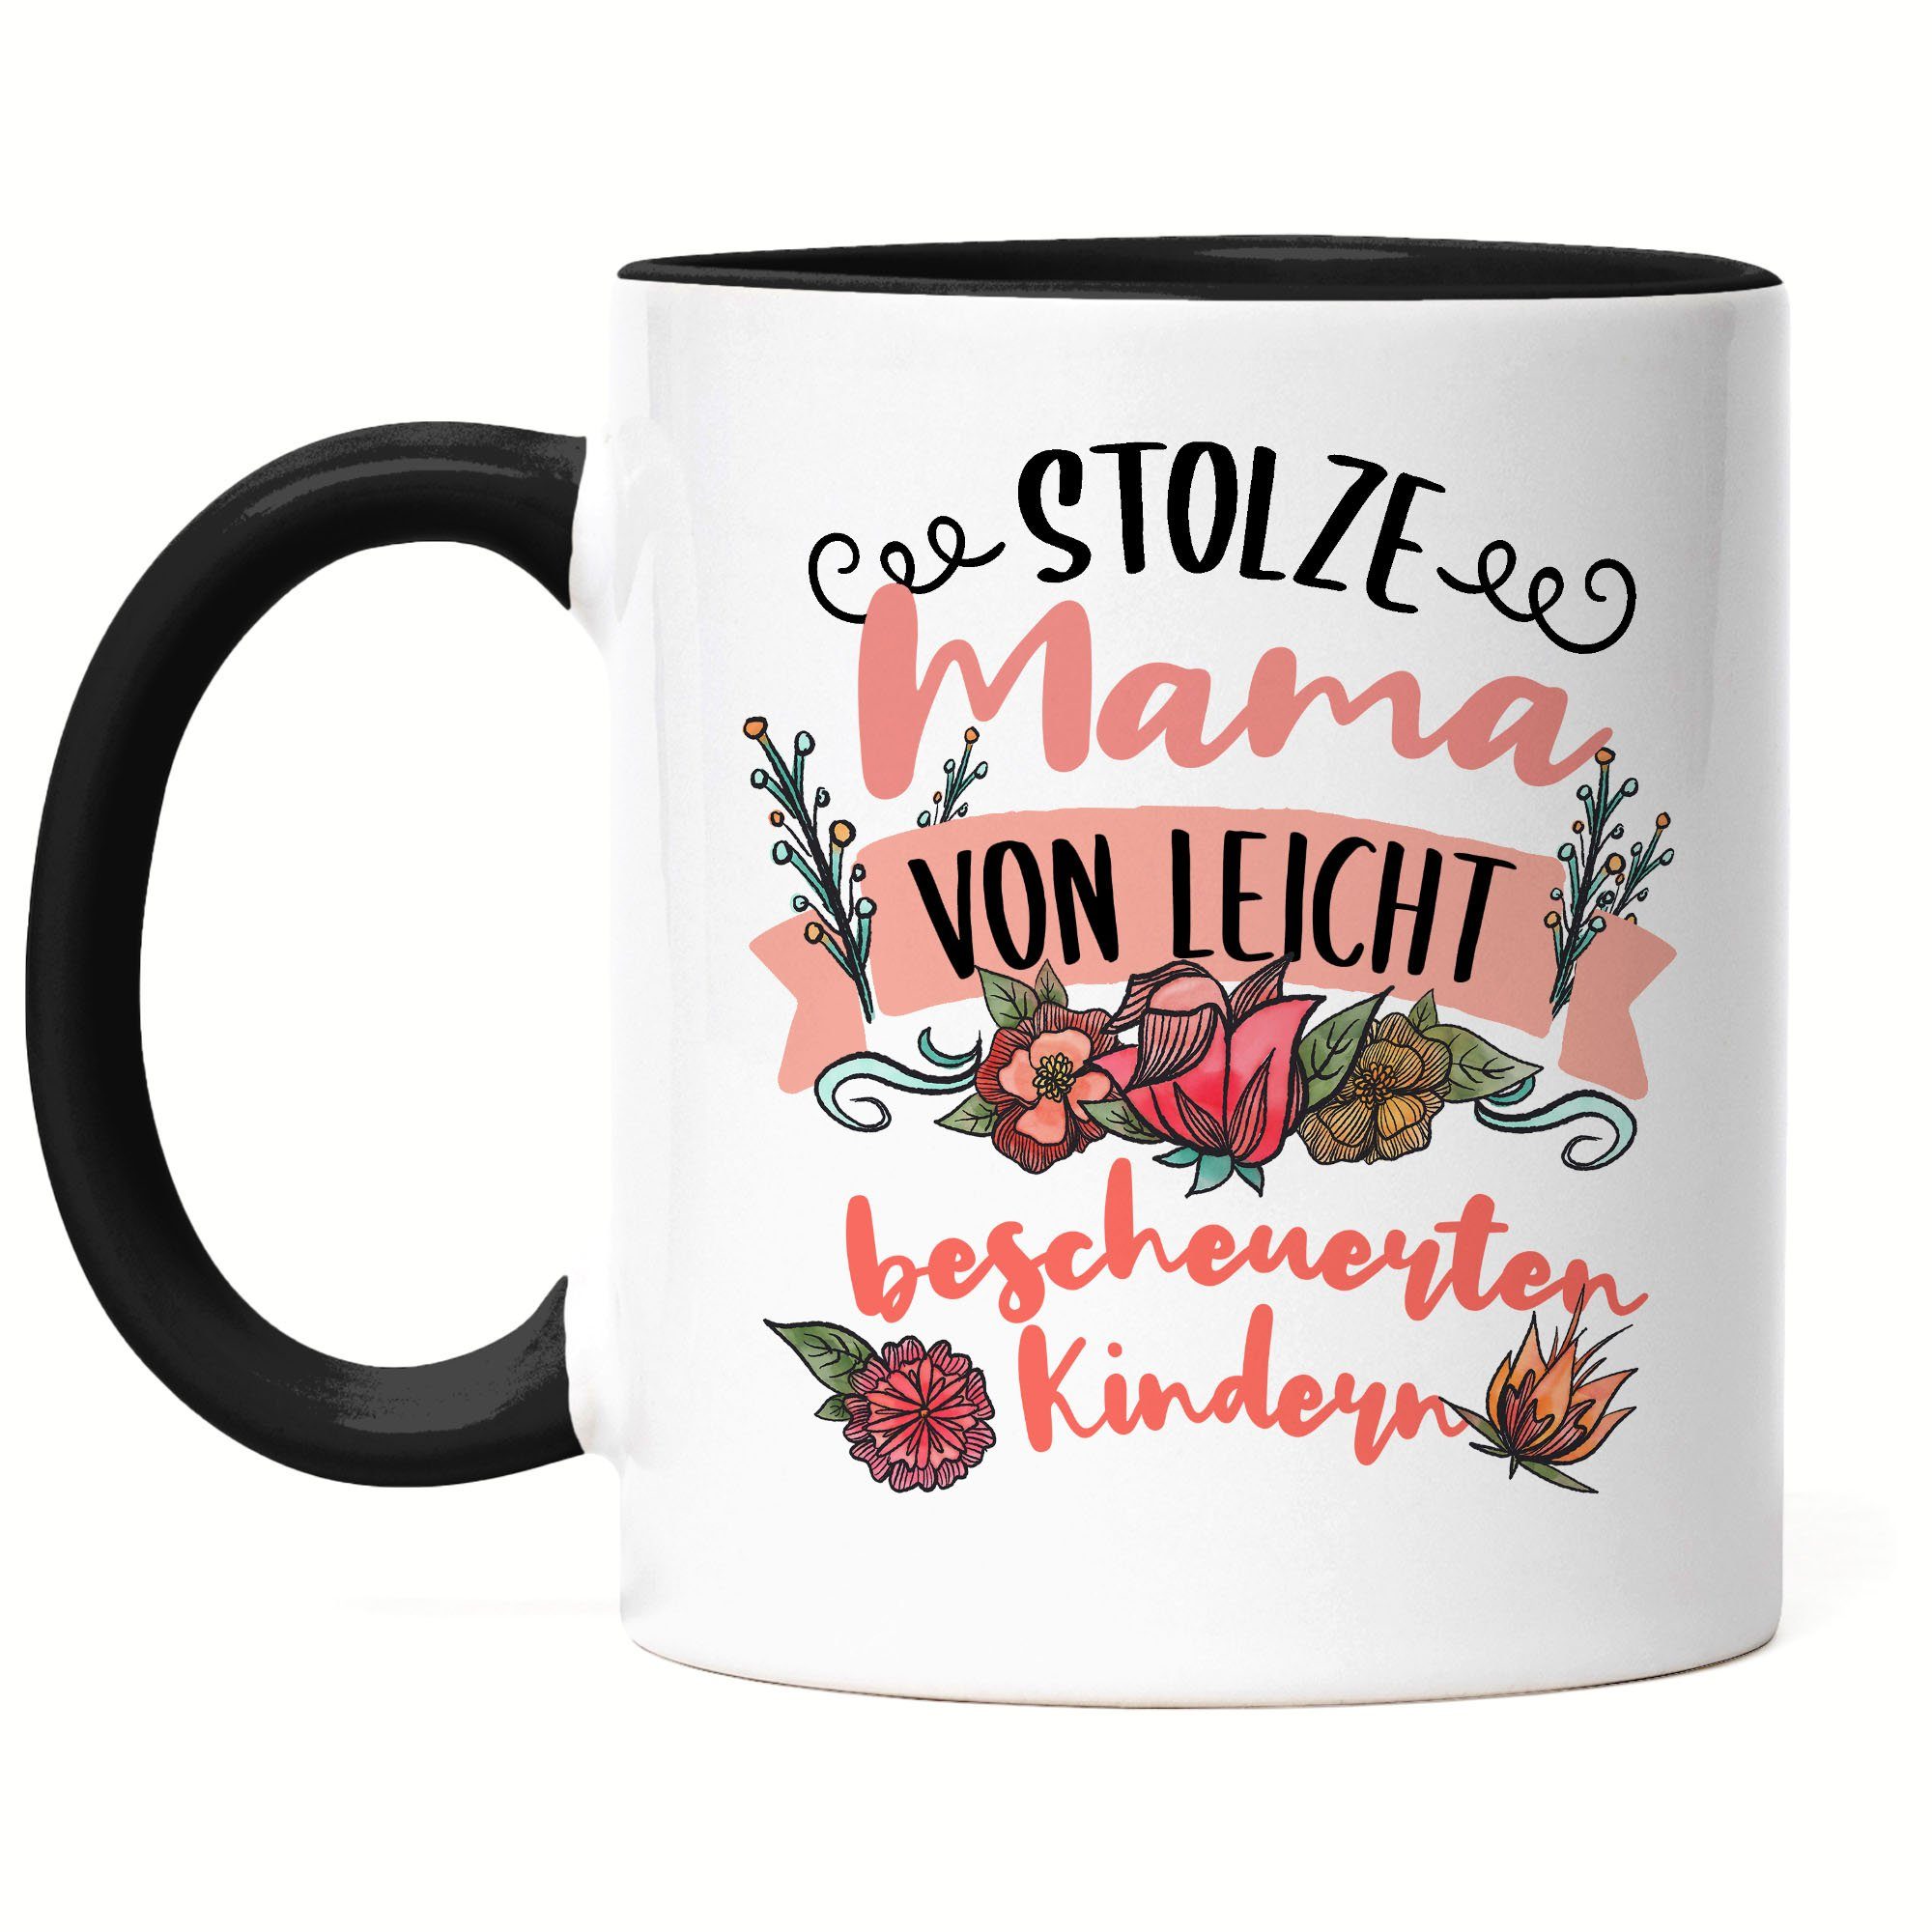 Hey!Print Tasse Stolze Mama von leicht bescheuerten Kindern Tasse Lustig Mutter Muttertag Spruch Geschenk Mama Mami Schwarz